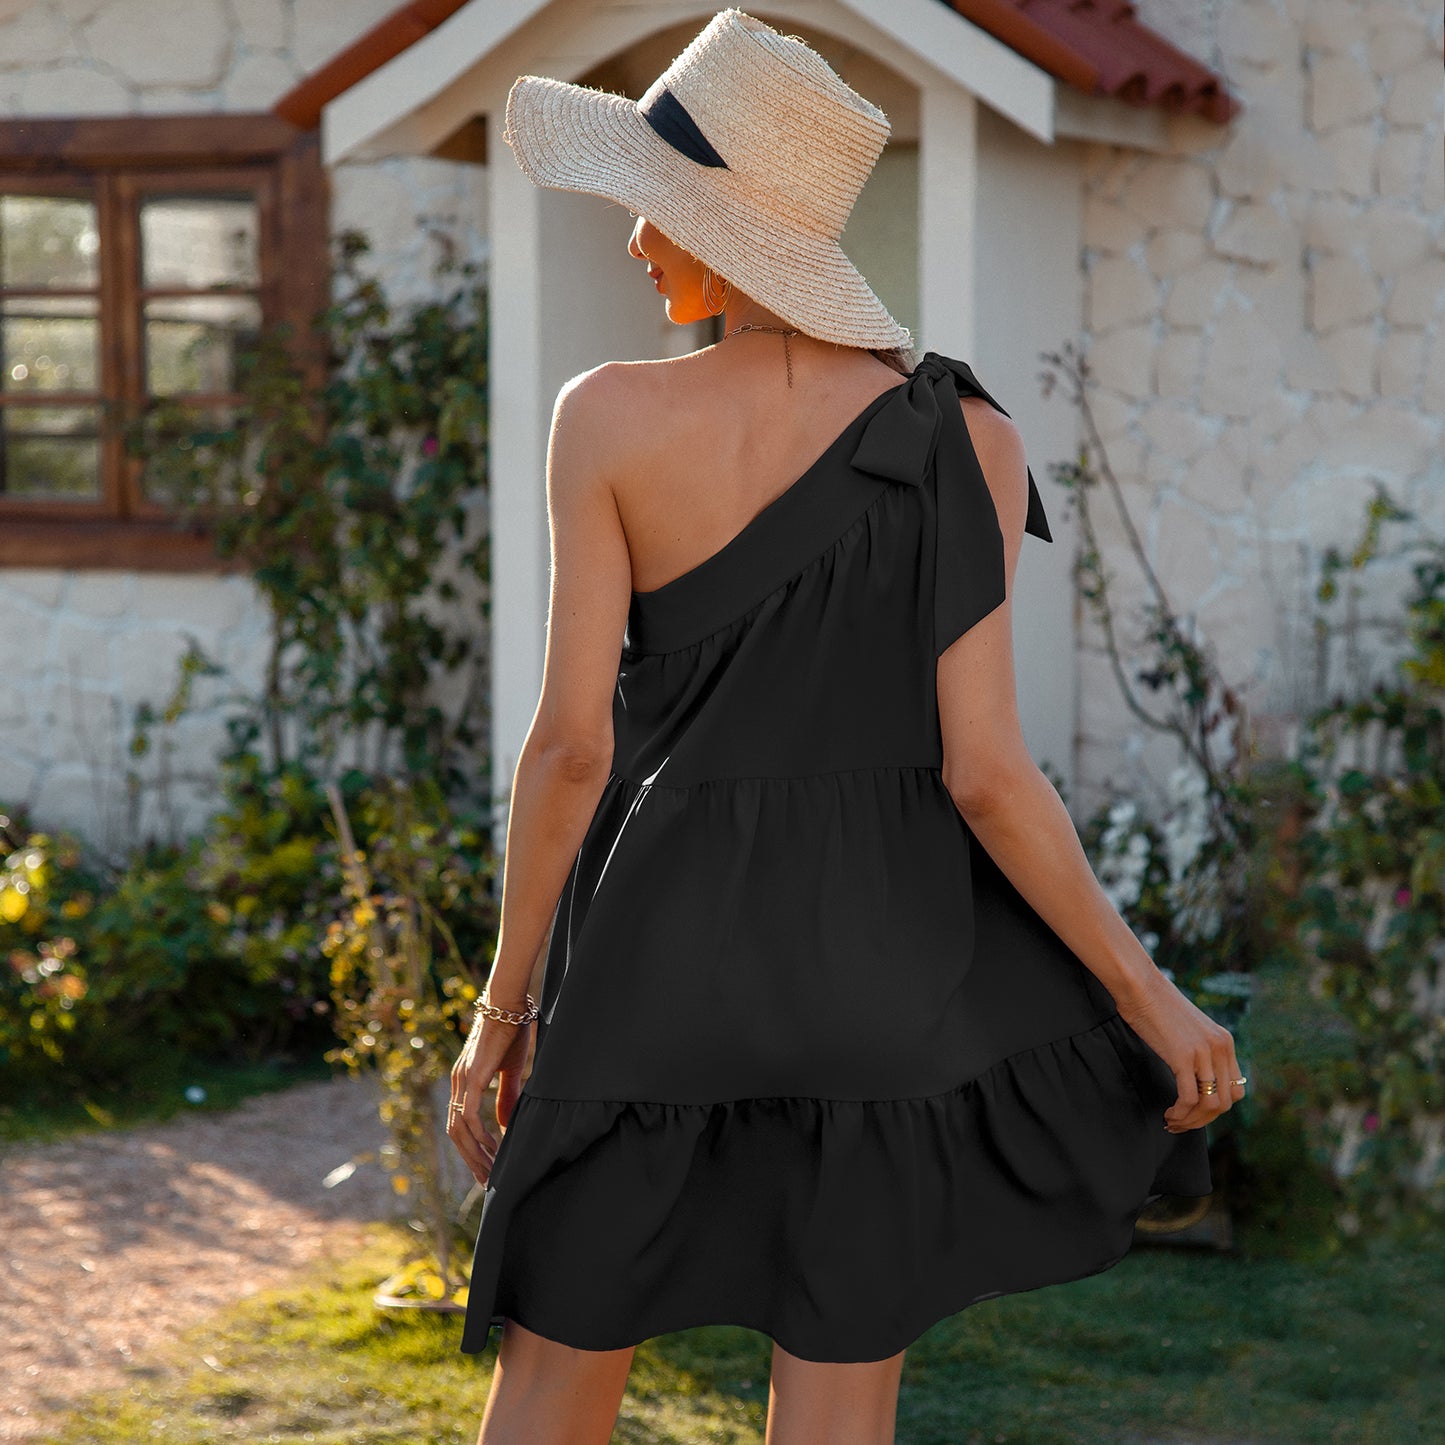 YESFASHION New Small Chiffon Skirt Beauty Design French Dress